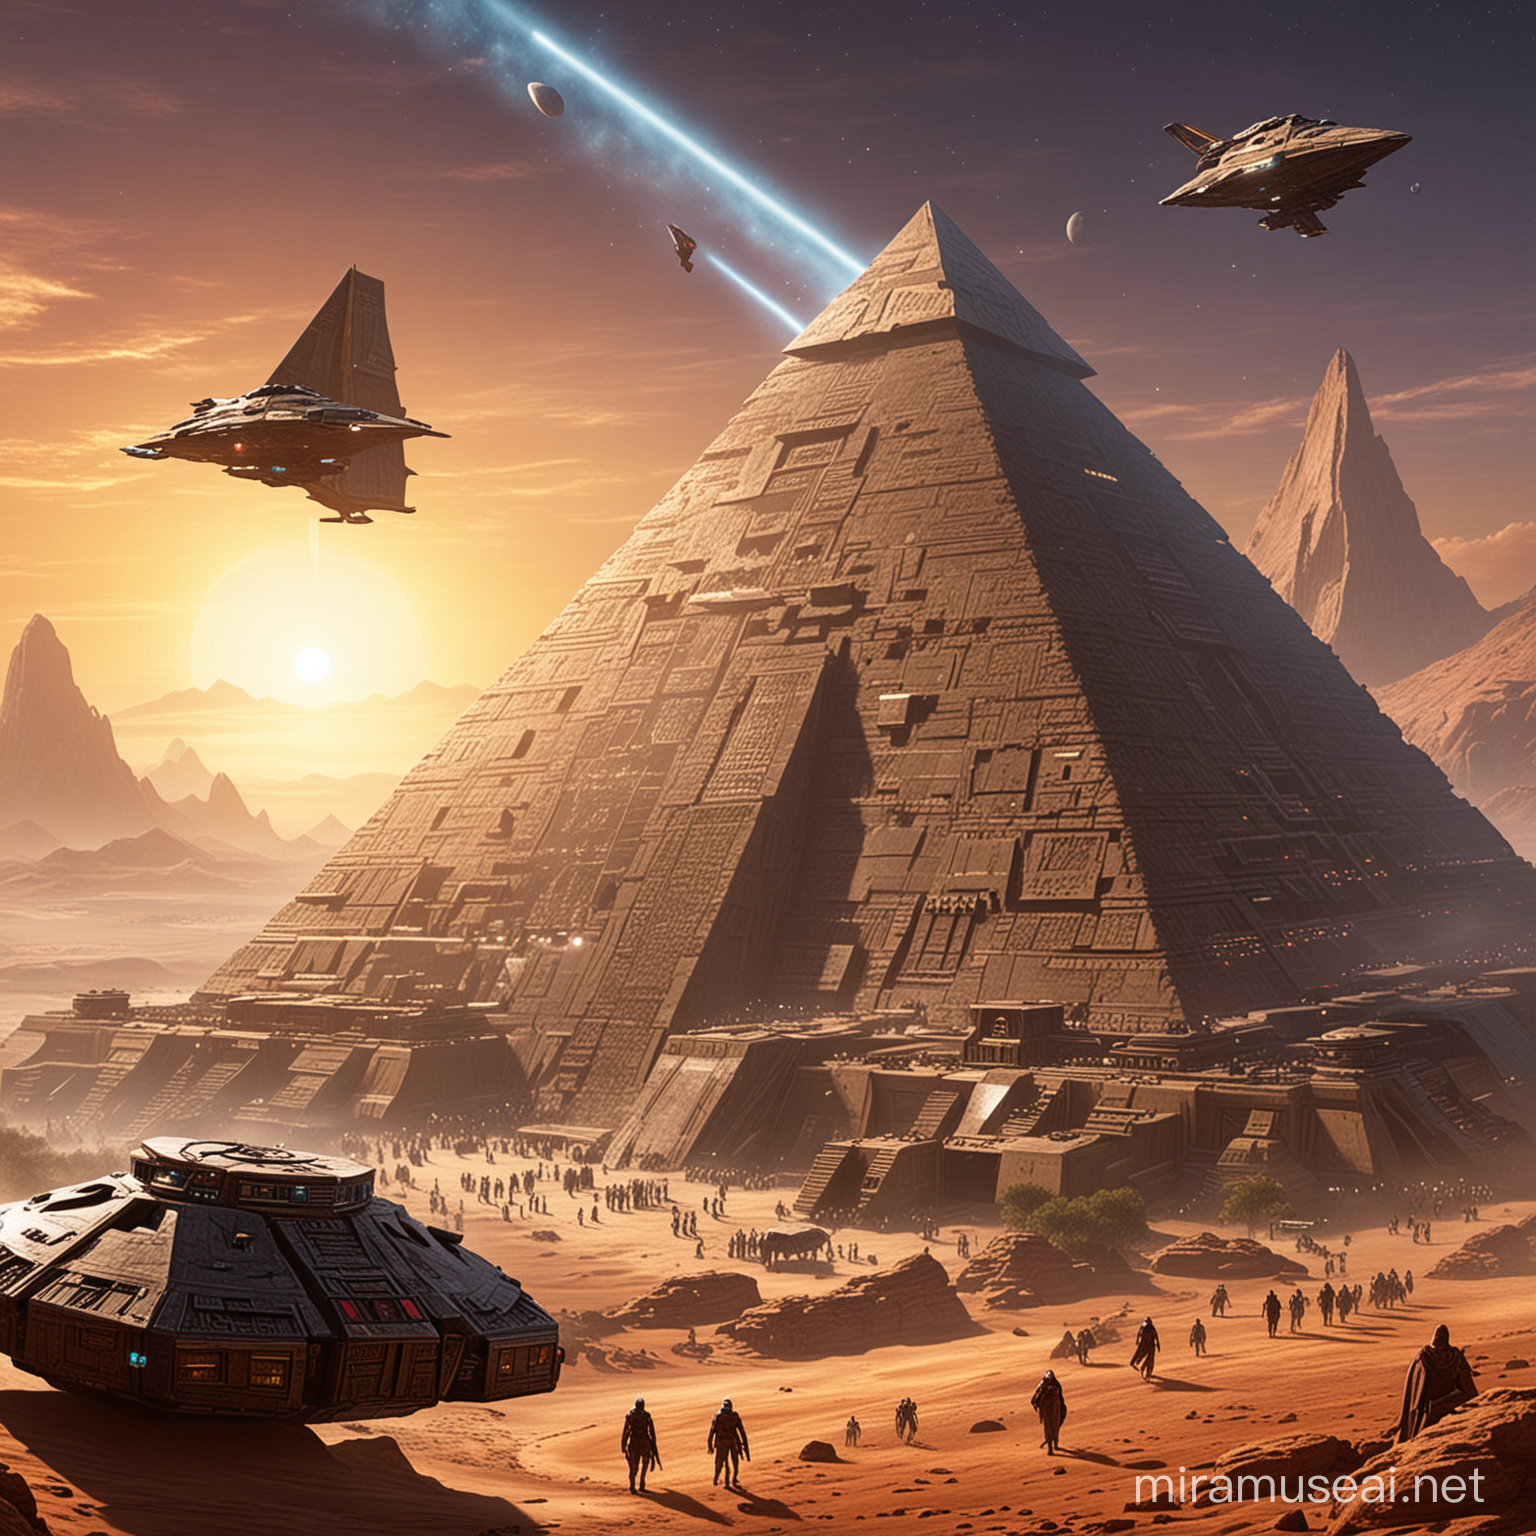 придумай планету, которую могли бы посетить герои звёздных врат или SWKOTOR, шаттл дарта сидиуса и пирамида ацтеков также должны присутствовать